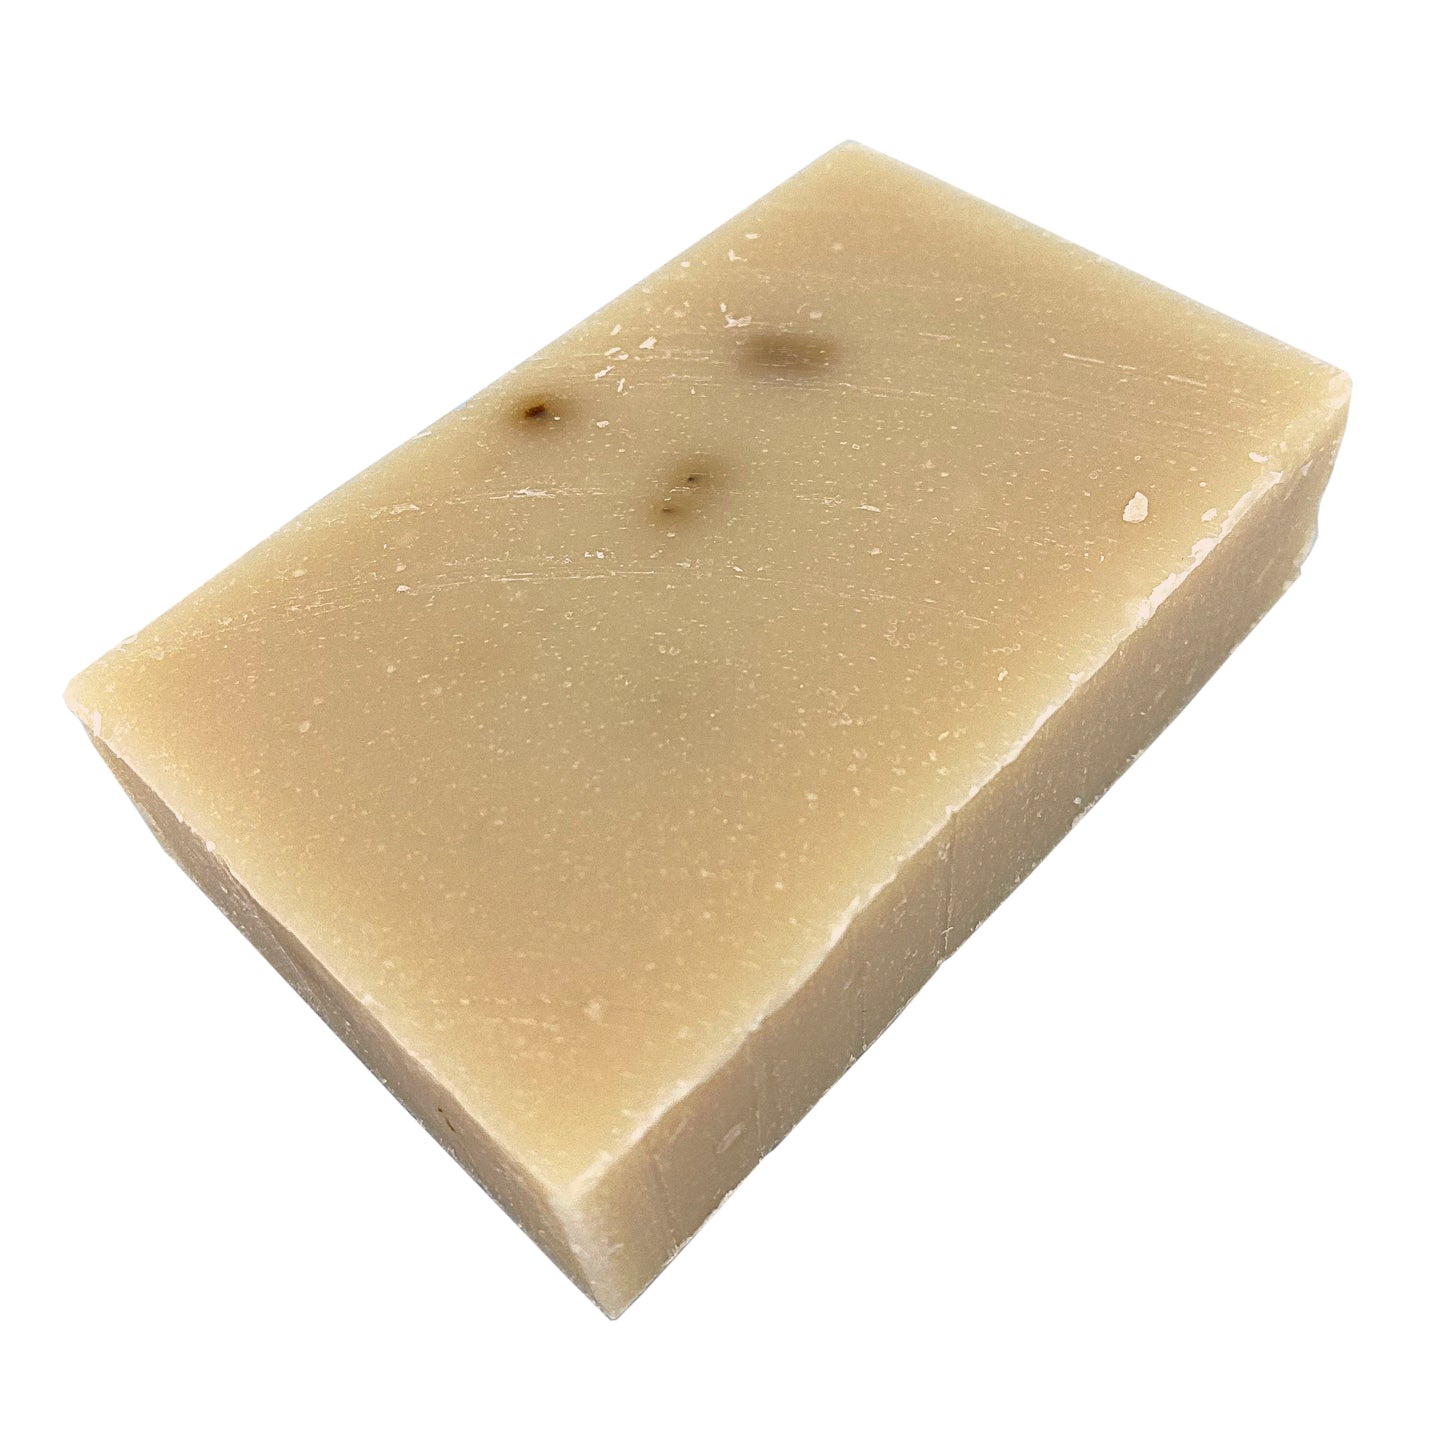 Skunk Ape's Lavender Patchouli | Cold Process Soap